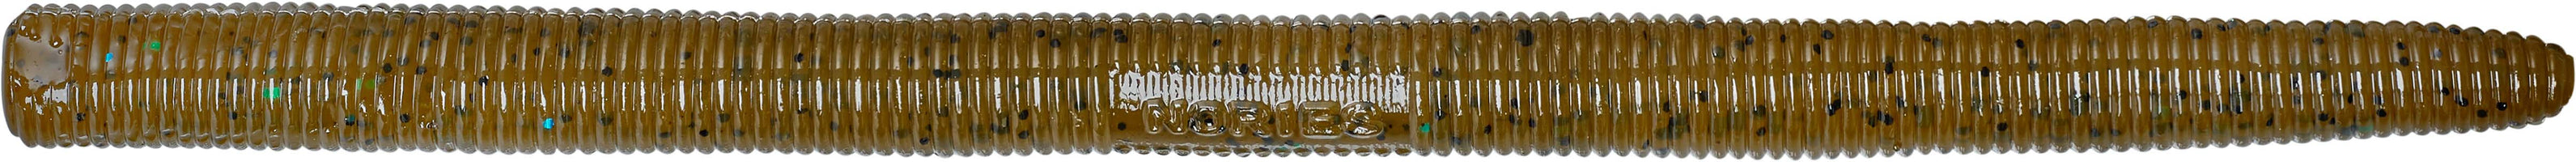 Nories 5.25 Inch Latterie Neko Rig Worm - 8 Pack